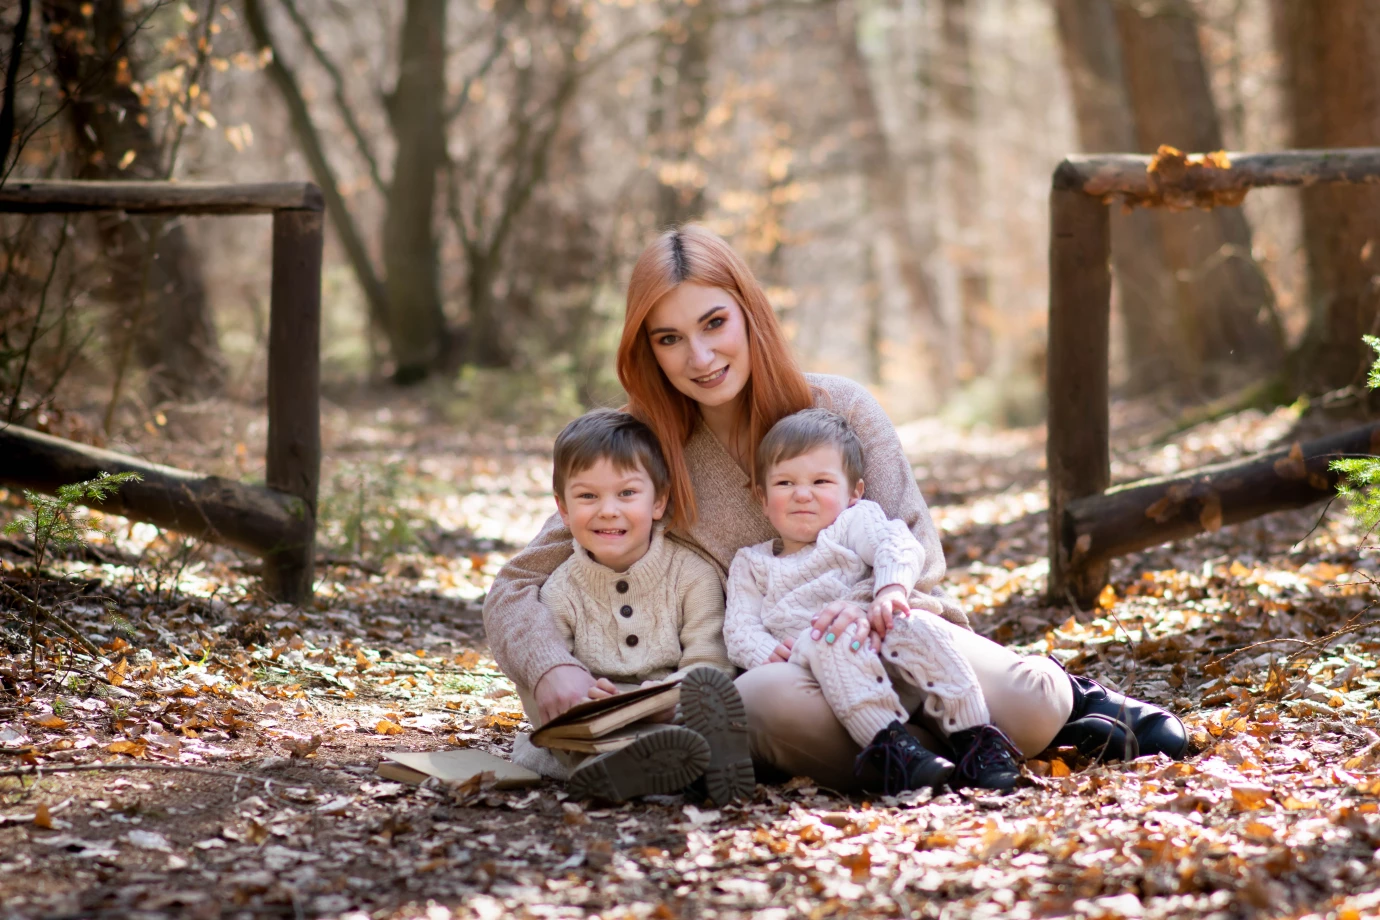 fotograf trojmiasto laura-borkowska portfolio zdjecia rodzinne fotografia rodzinna sesja